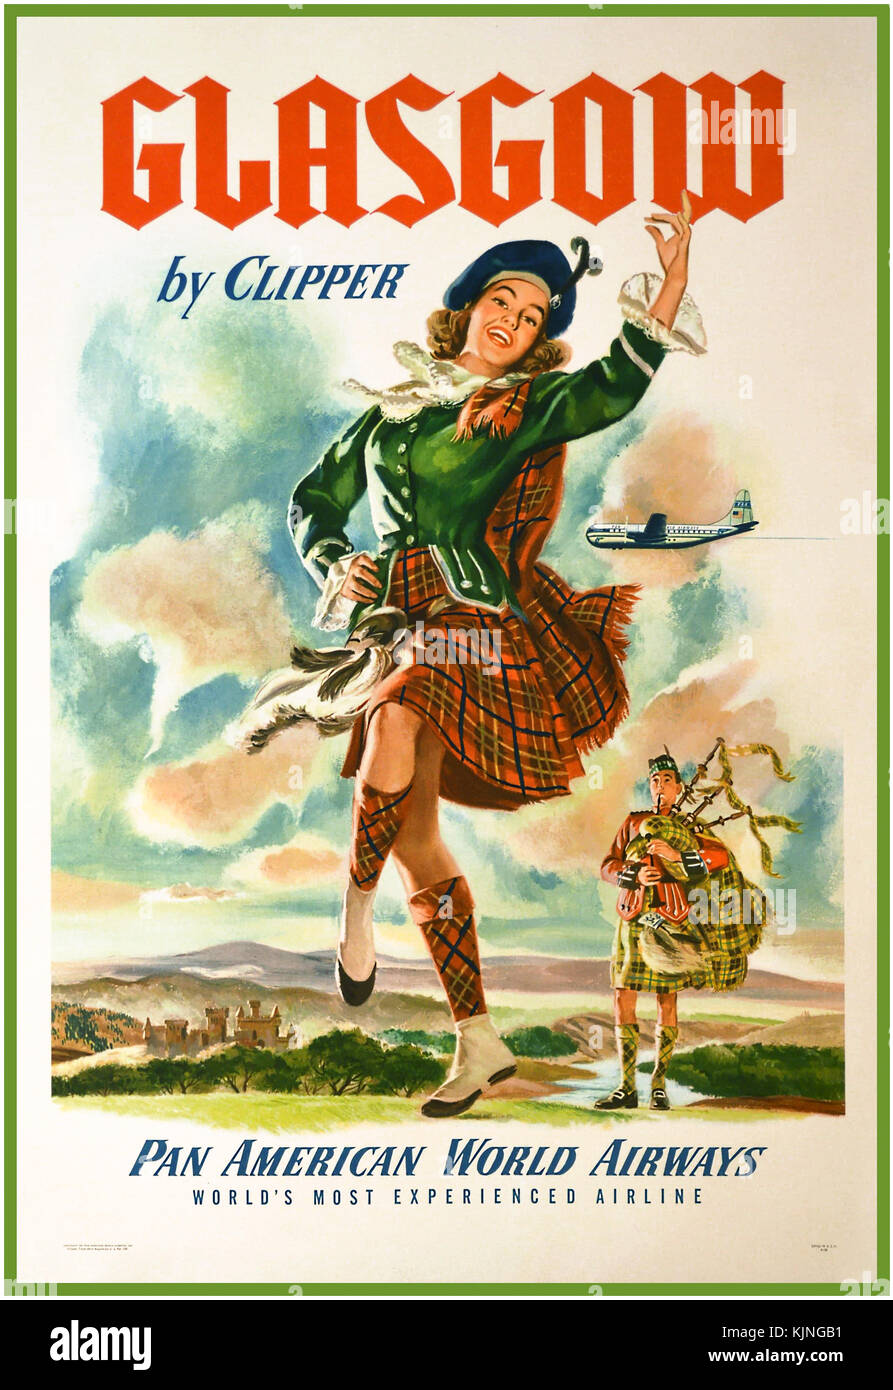 Vintage-Reiseplakat aus den 1960er Jahren GLASGOW Schottland von Pan American World Airways Clipper Aircraft. Mit einer traditionellen Tartan-Tänzerin, die zu einem männlichen Dudelsackspieler tanzt. Schottland Stockfoto